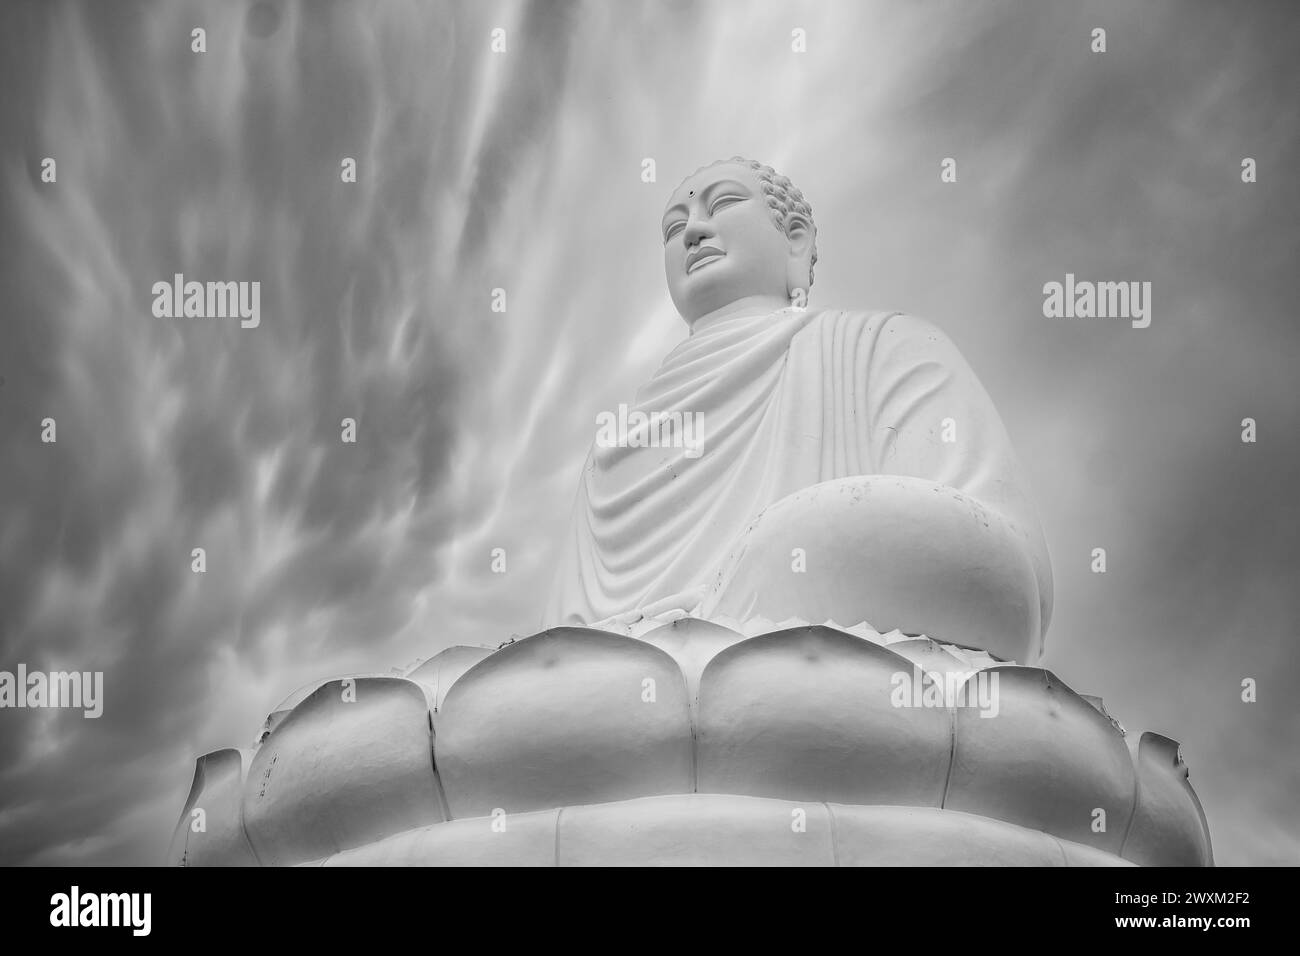 Grande statue de Bouddha à la pagode long son à Nha Trang Vietnam. Statue de Bouddha se trouve sur un lotus blanc - Nha Trang, photo noir et blanc Banque D'Images